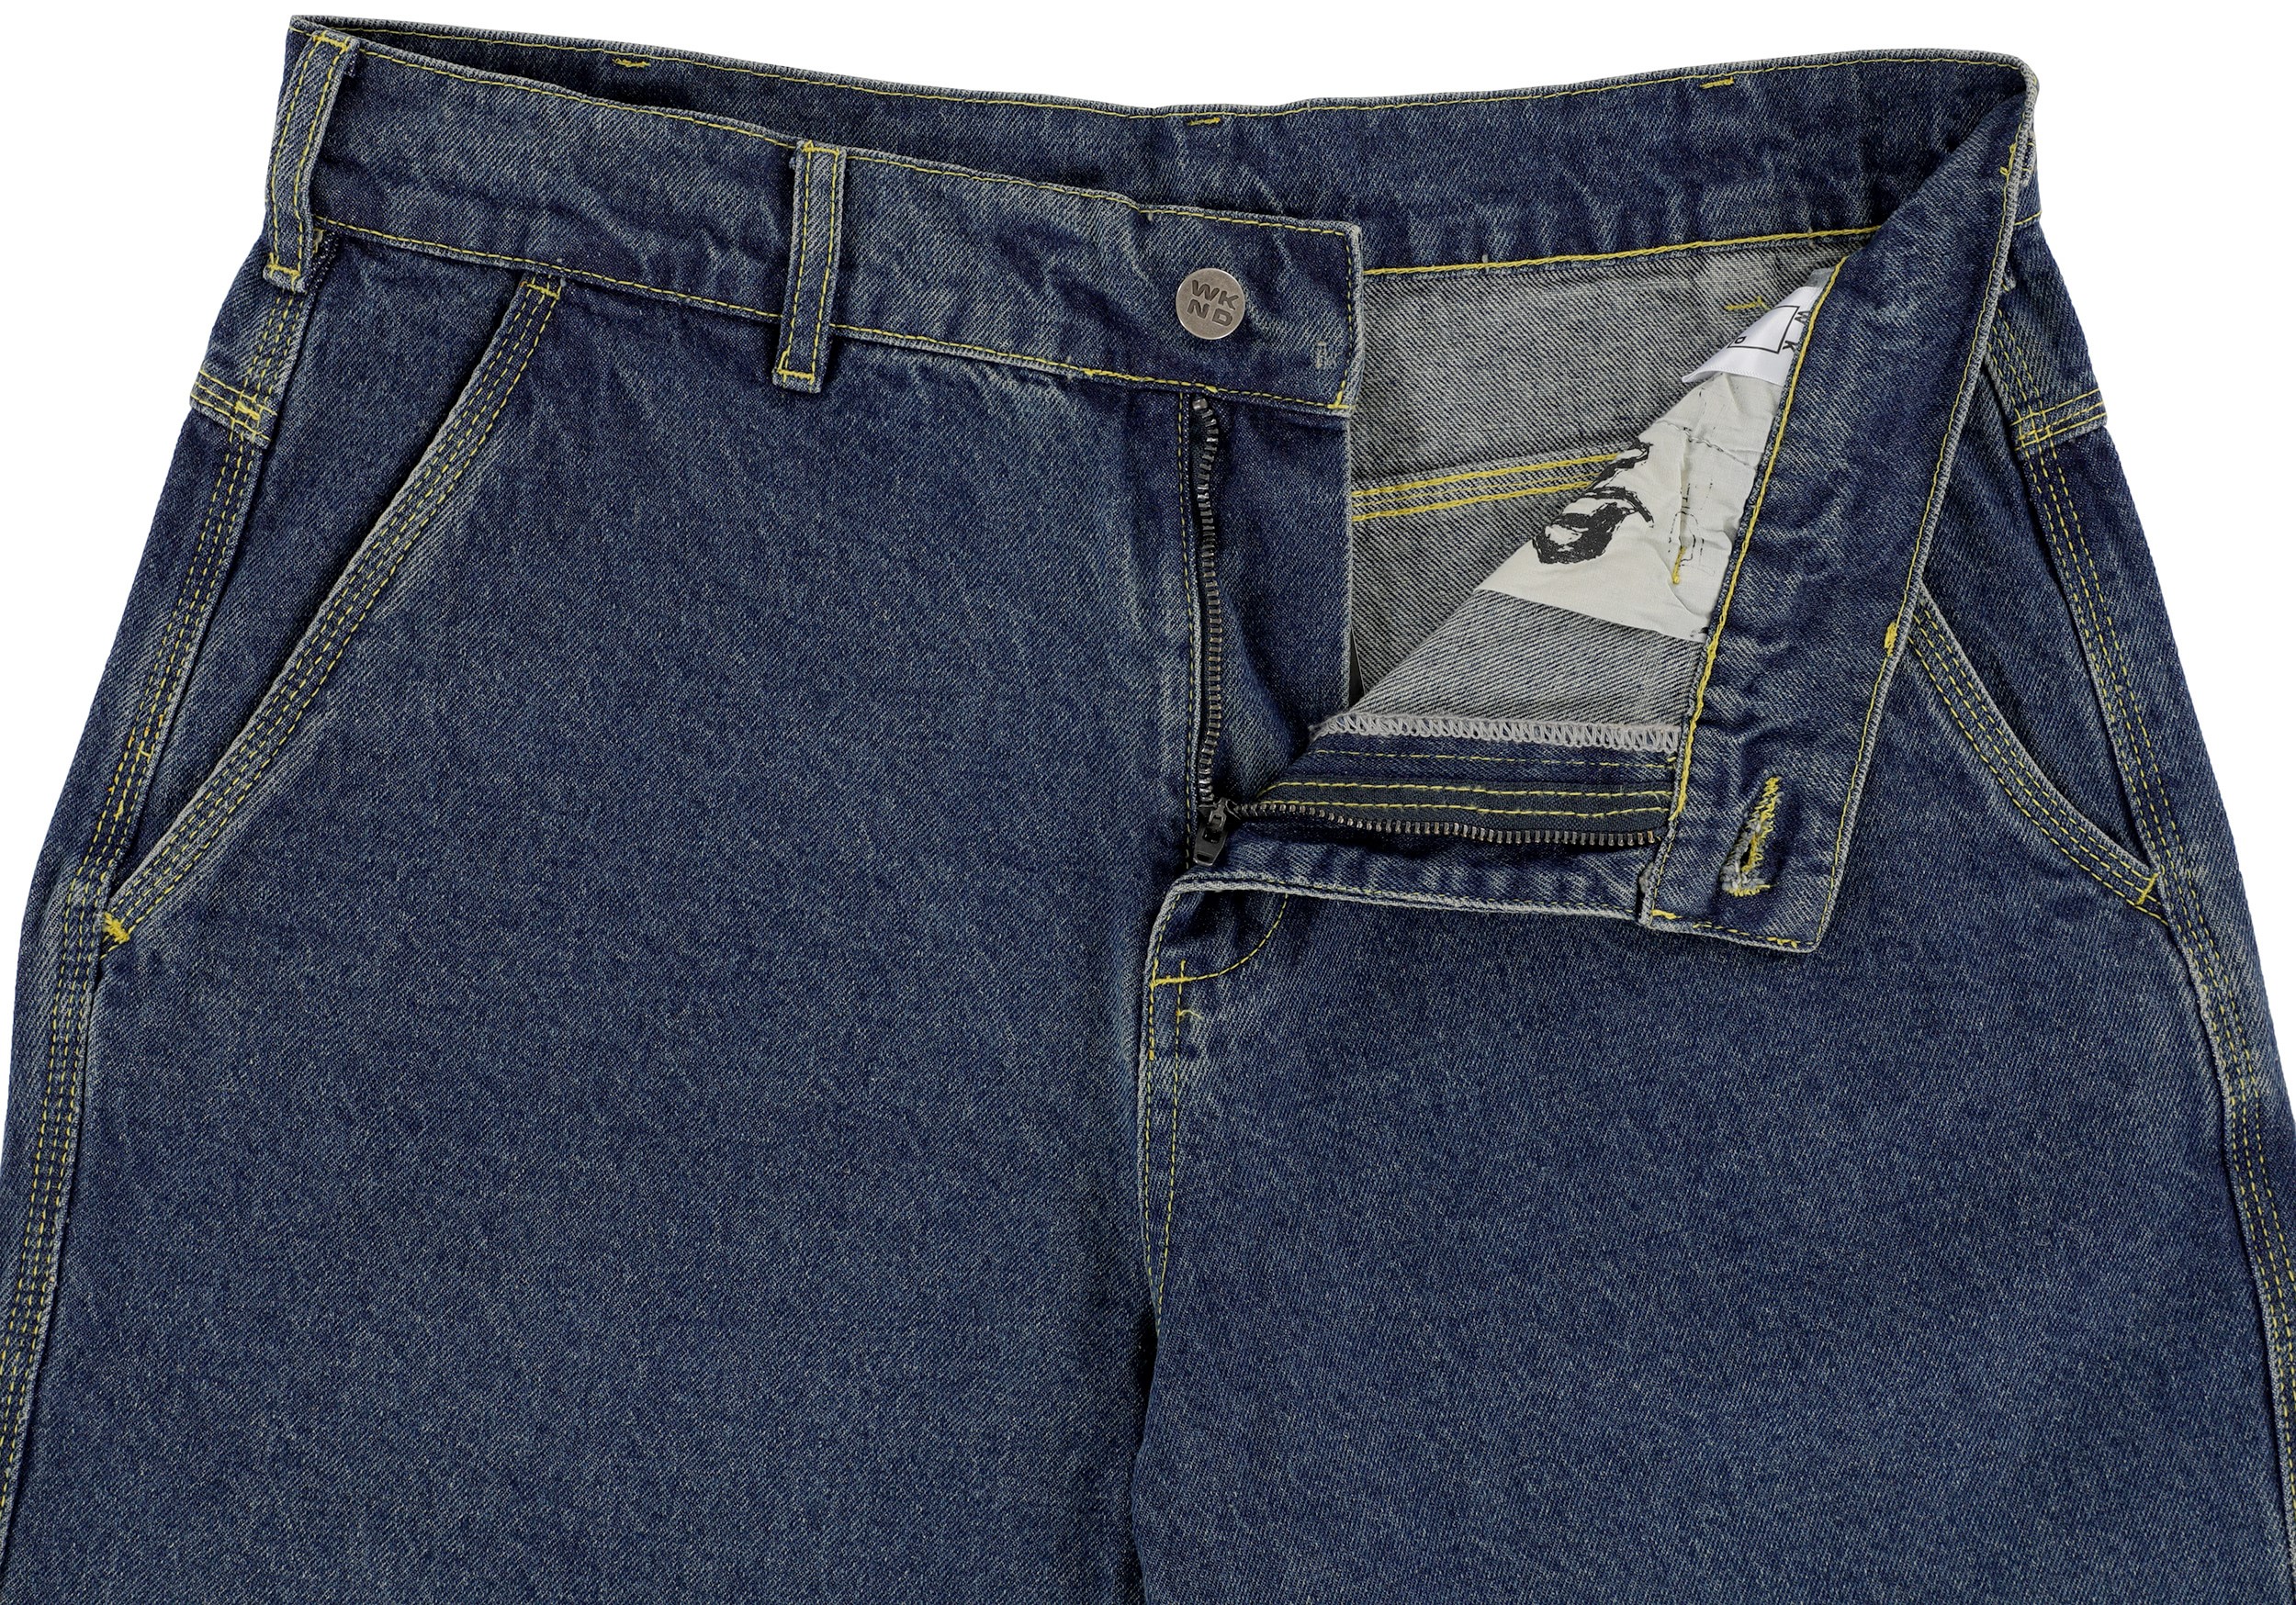 WKND Rigid Loosies Jeans - blue | Tactics